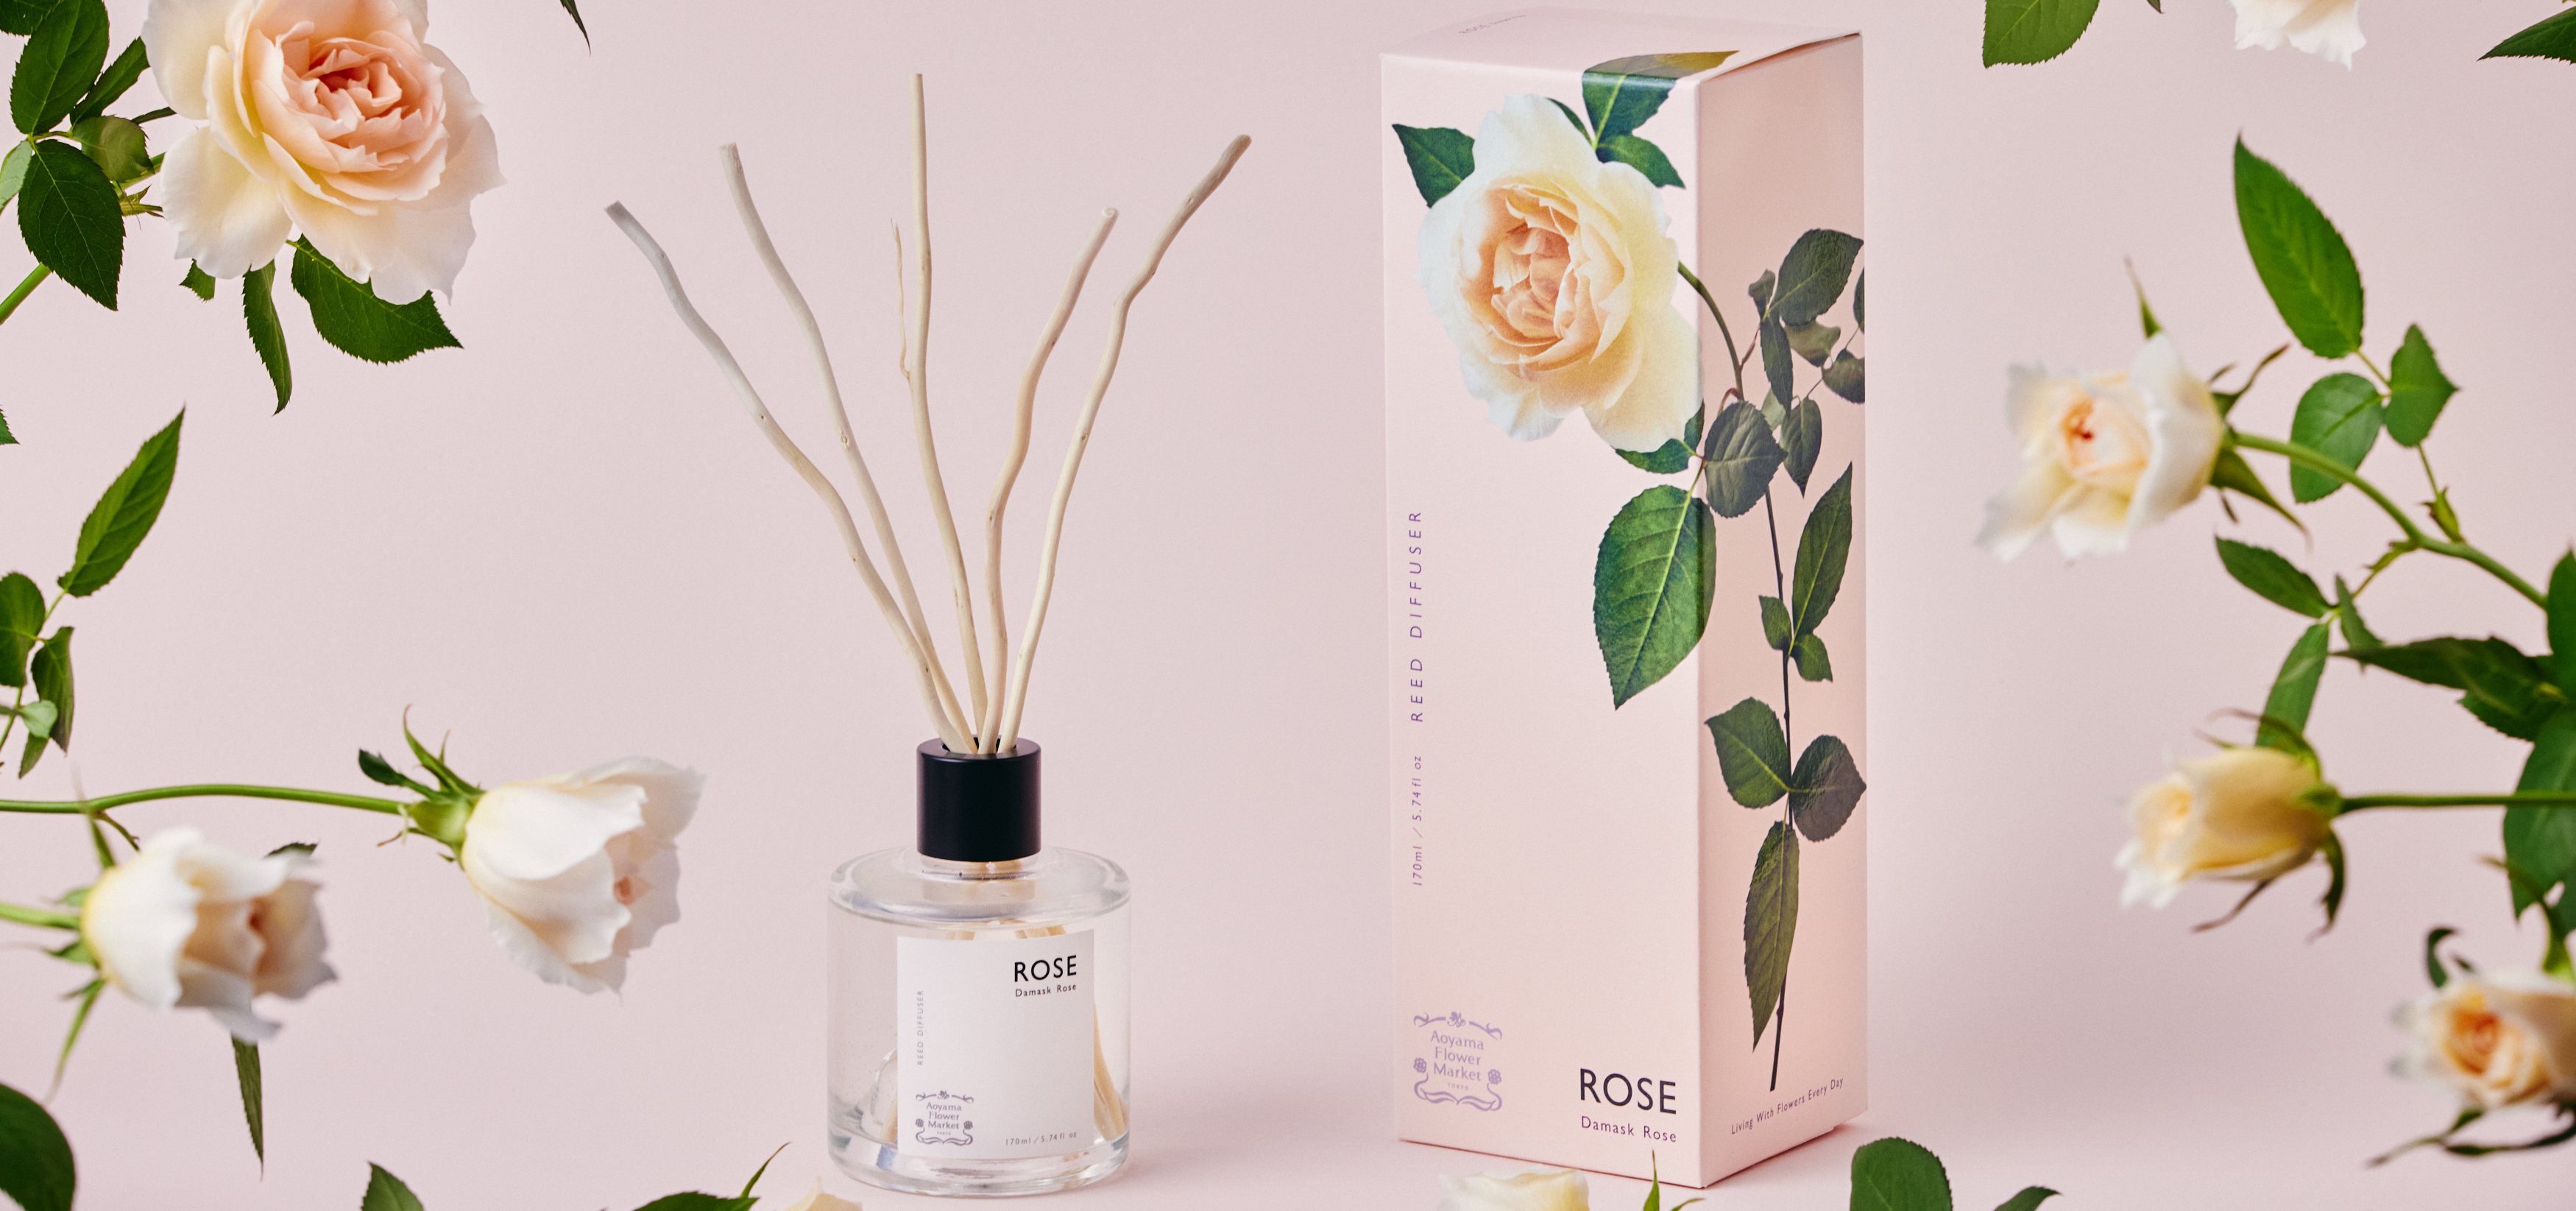 「花そのものの香り」にこだわったオリジナルフレグランスシリーズに「ローズ」の香りのディフューザーが仲間入り。